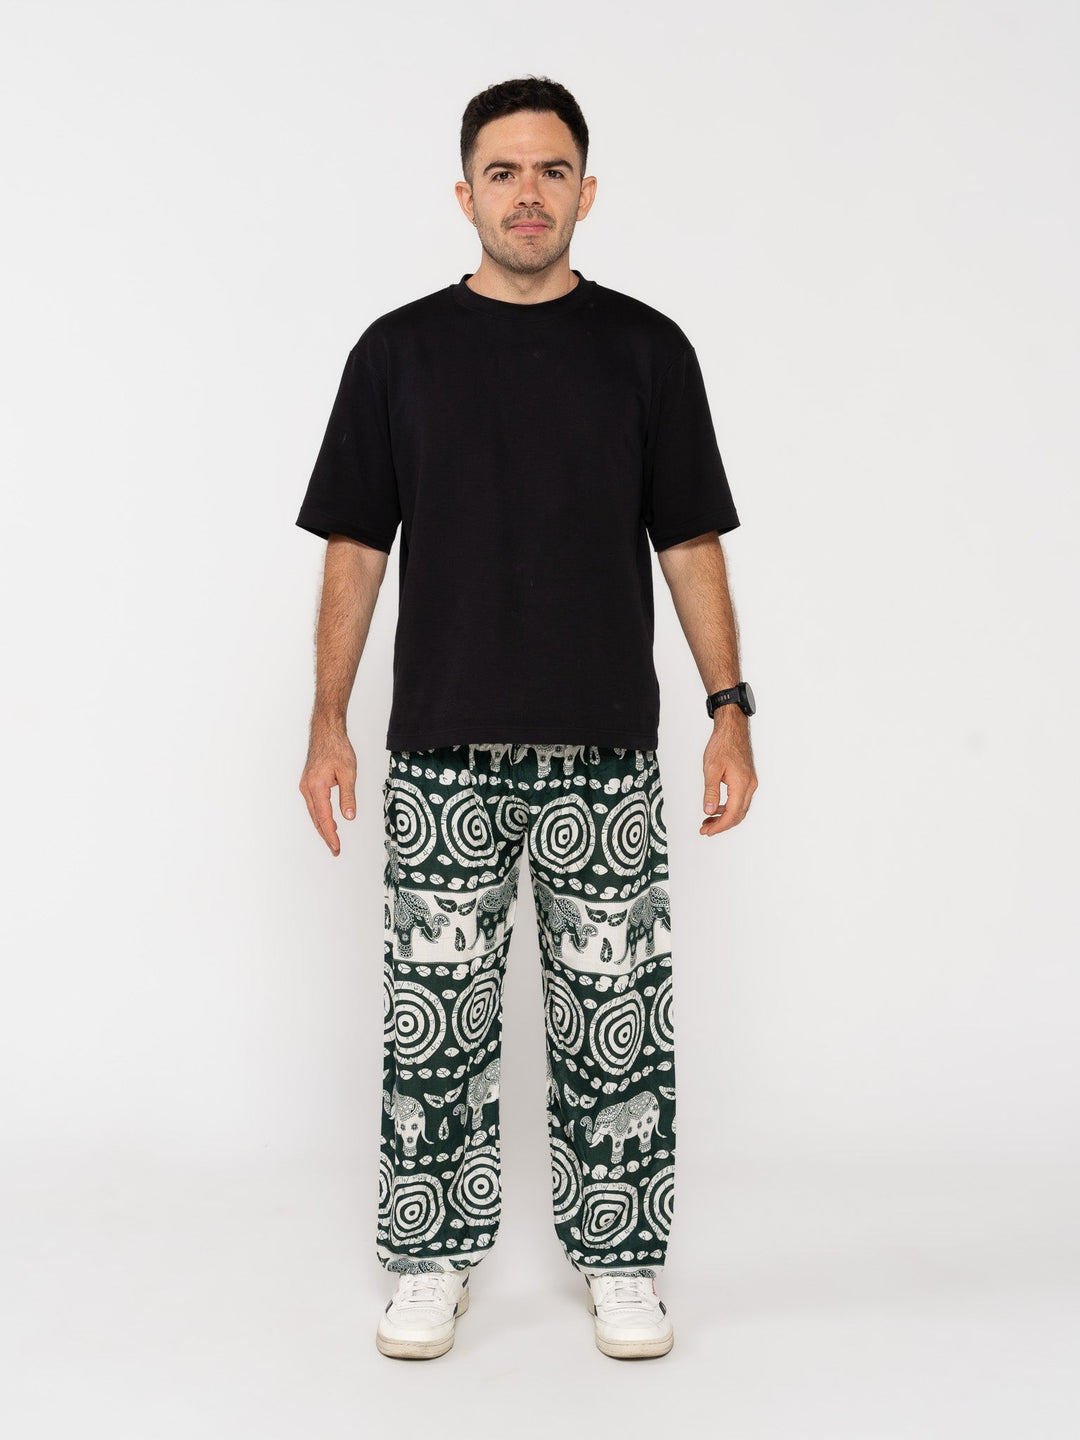 Padma Verde Oscuro - Pantsforlove Pantalones anchos, pantalones yoga